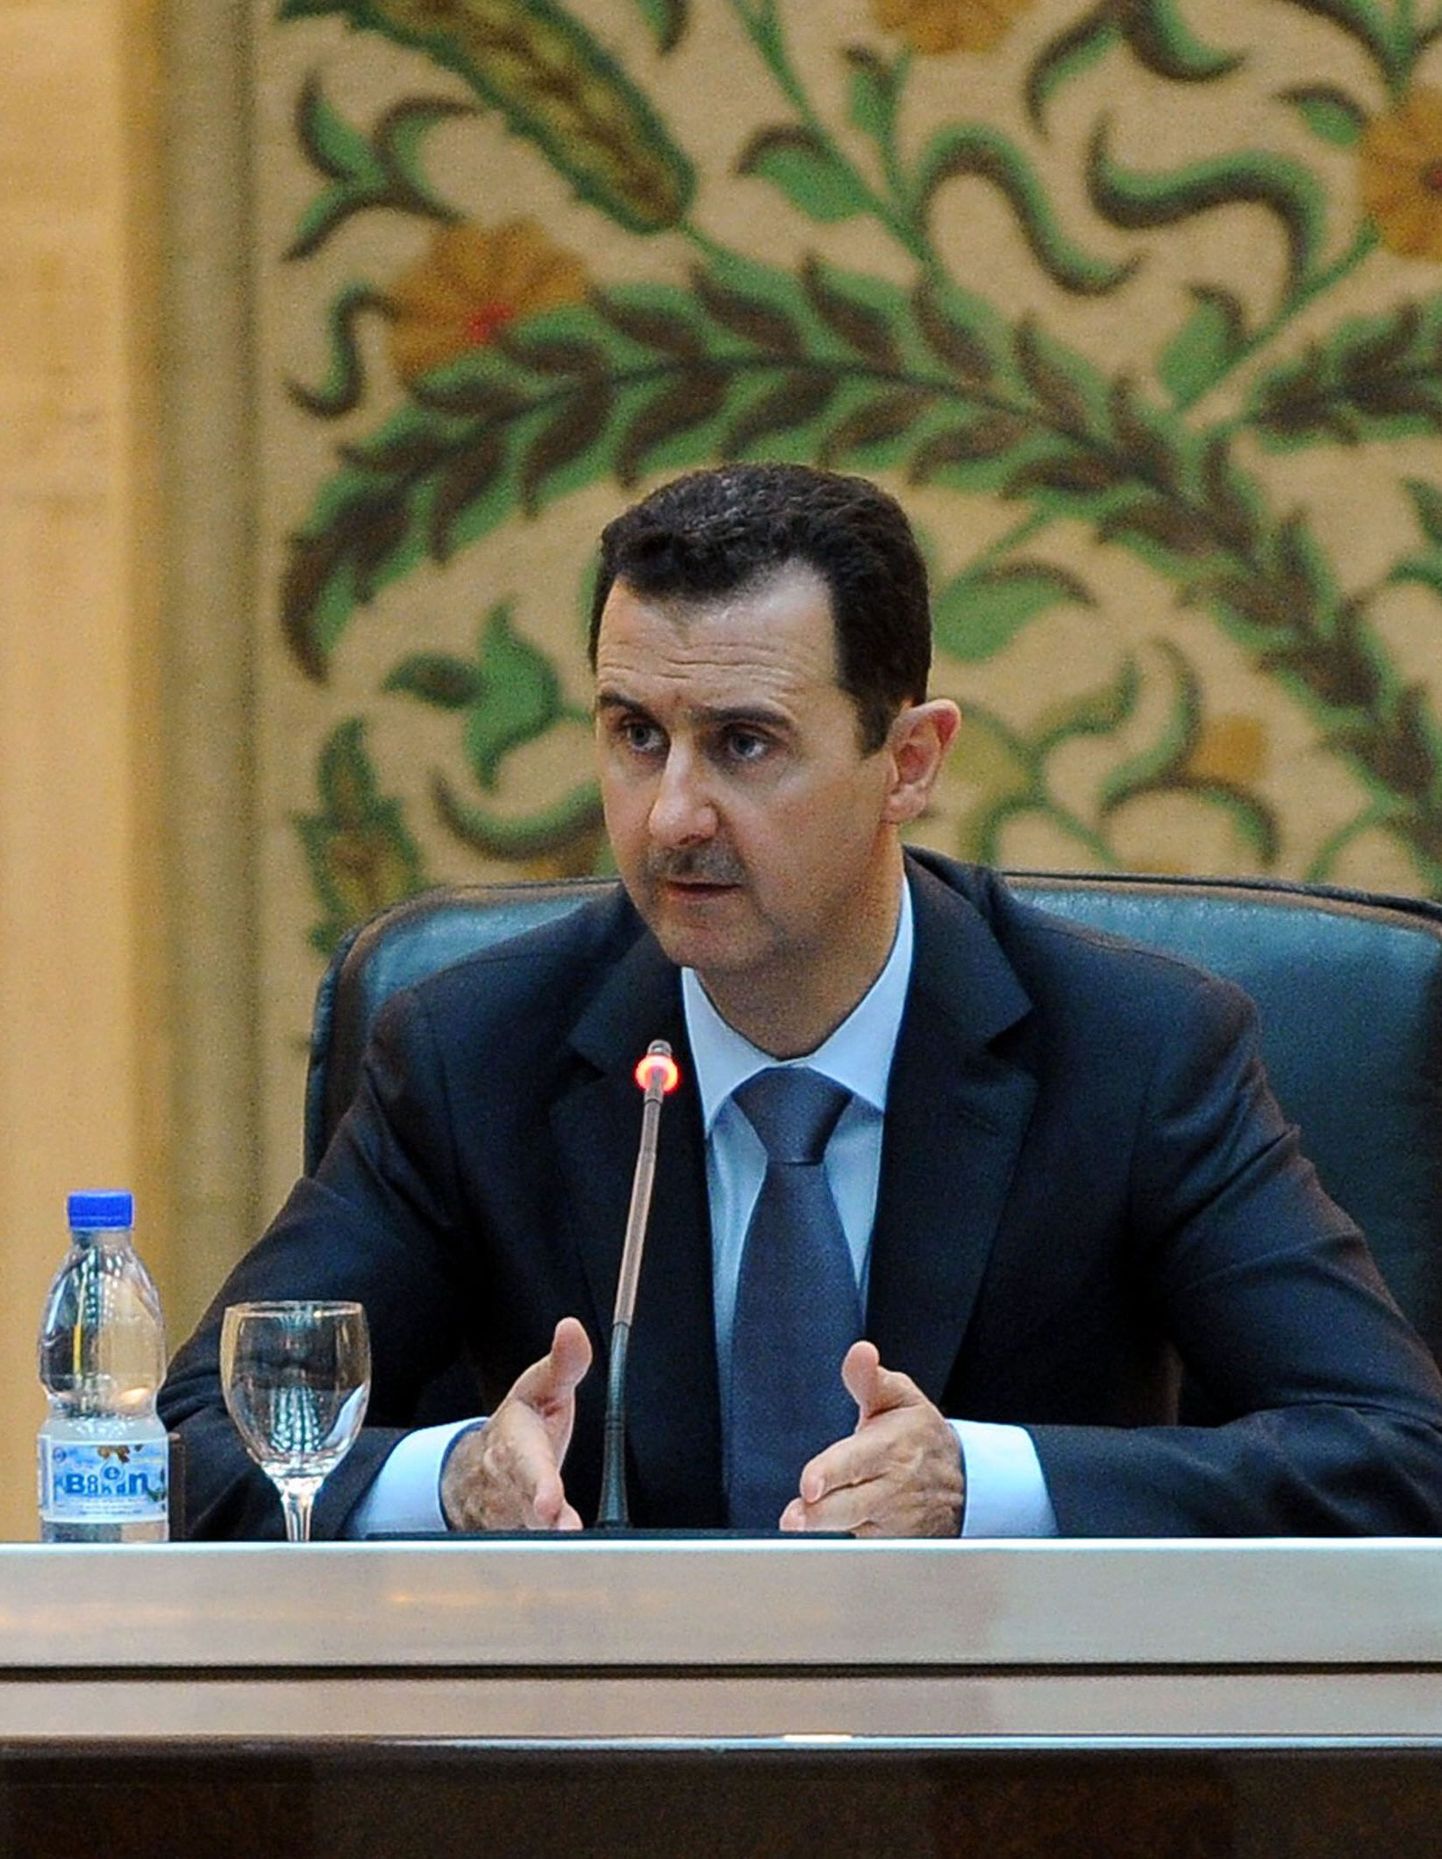 Президент Сирии Башар Асад.